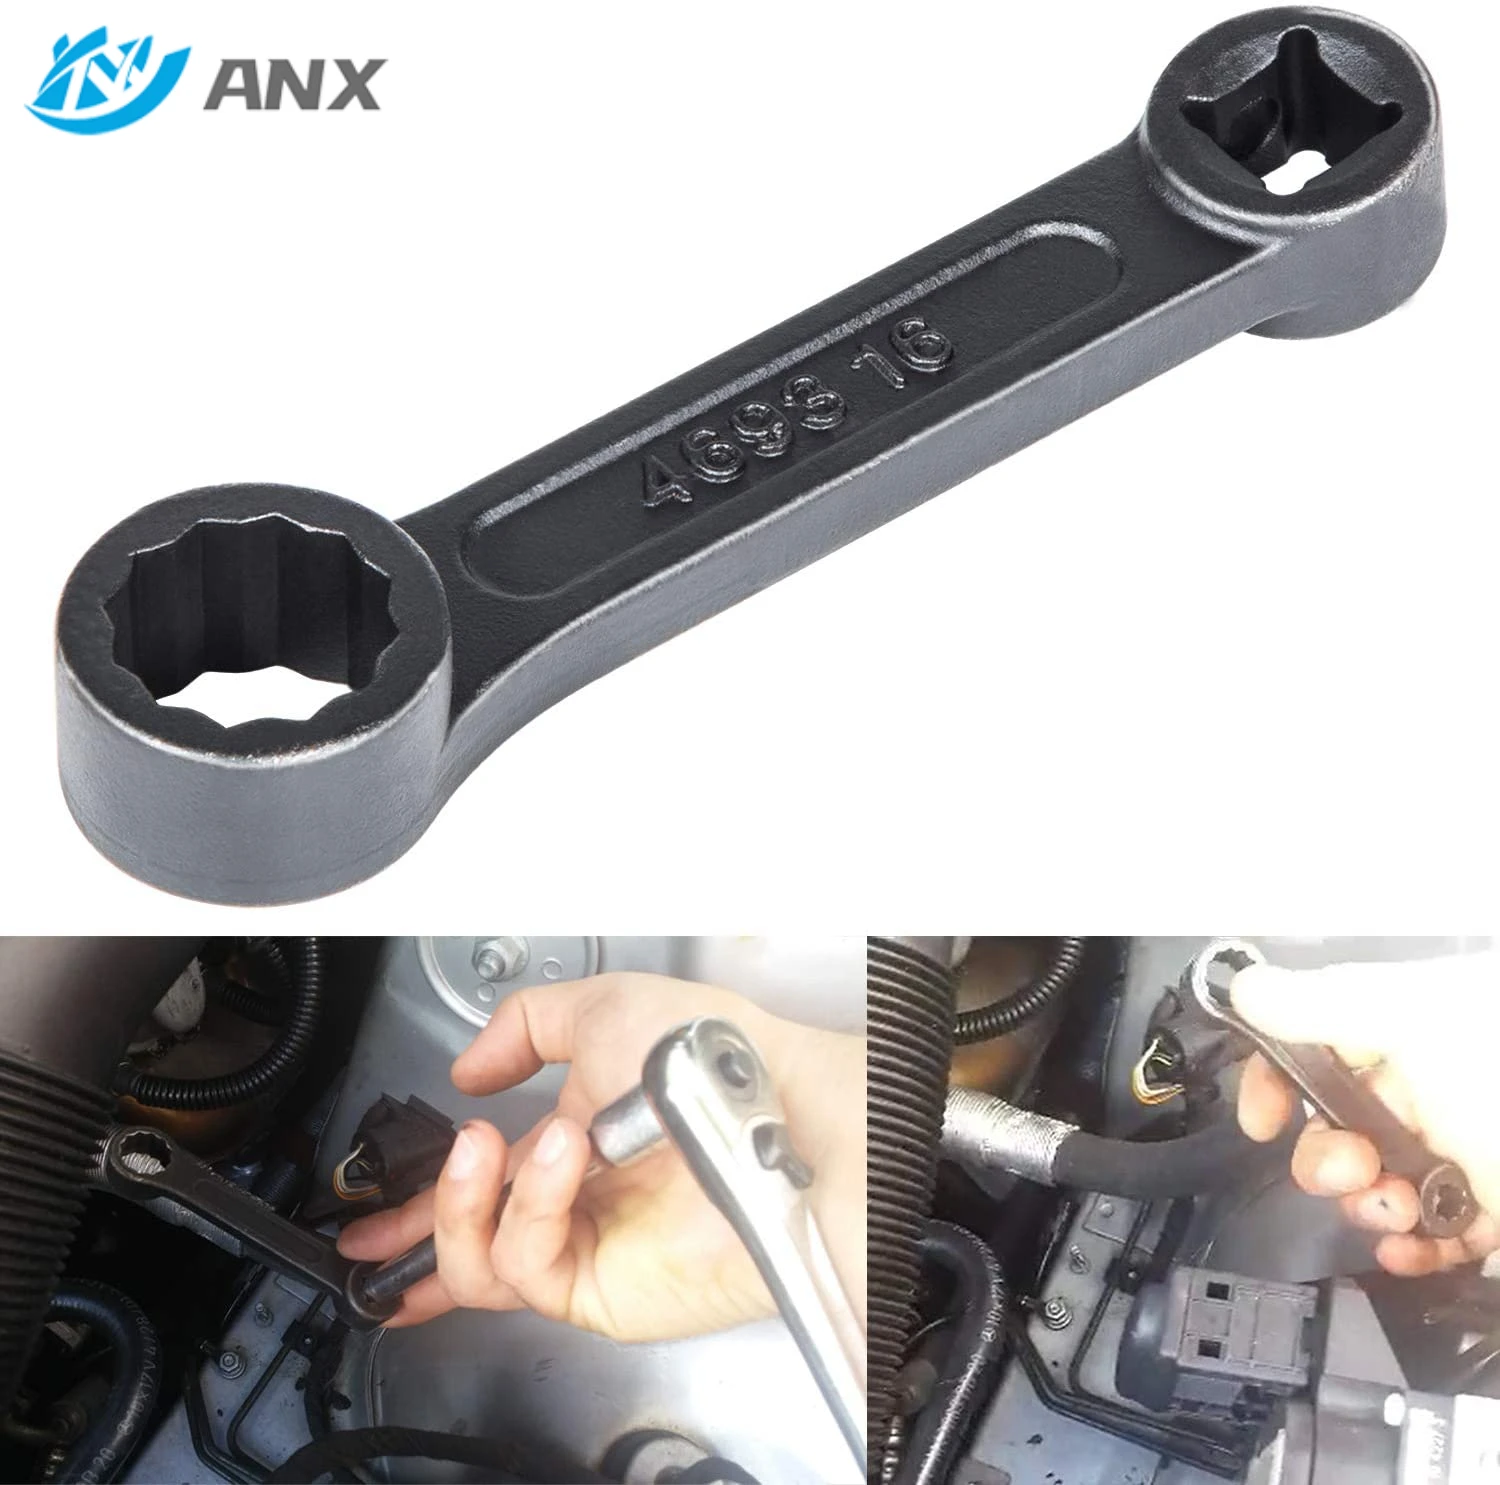 ANX Offset 16mm 4693 Engine Mount Socket Wrench for Mercedes Benz W220/ W210/W203/W221/W211/W204 кольцо зажигания для benz w129 w140 w211 w220 w203